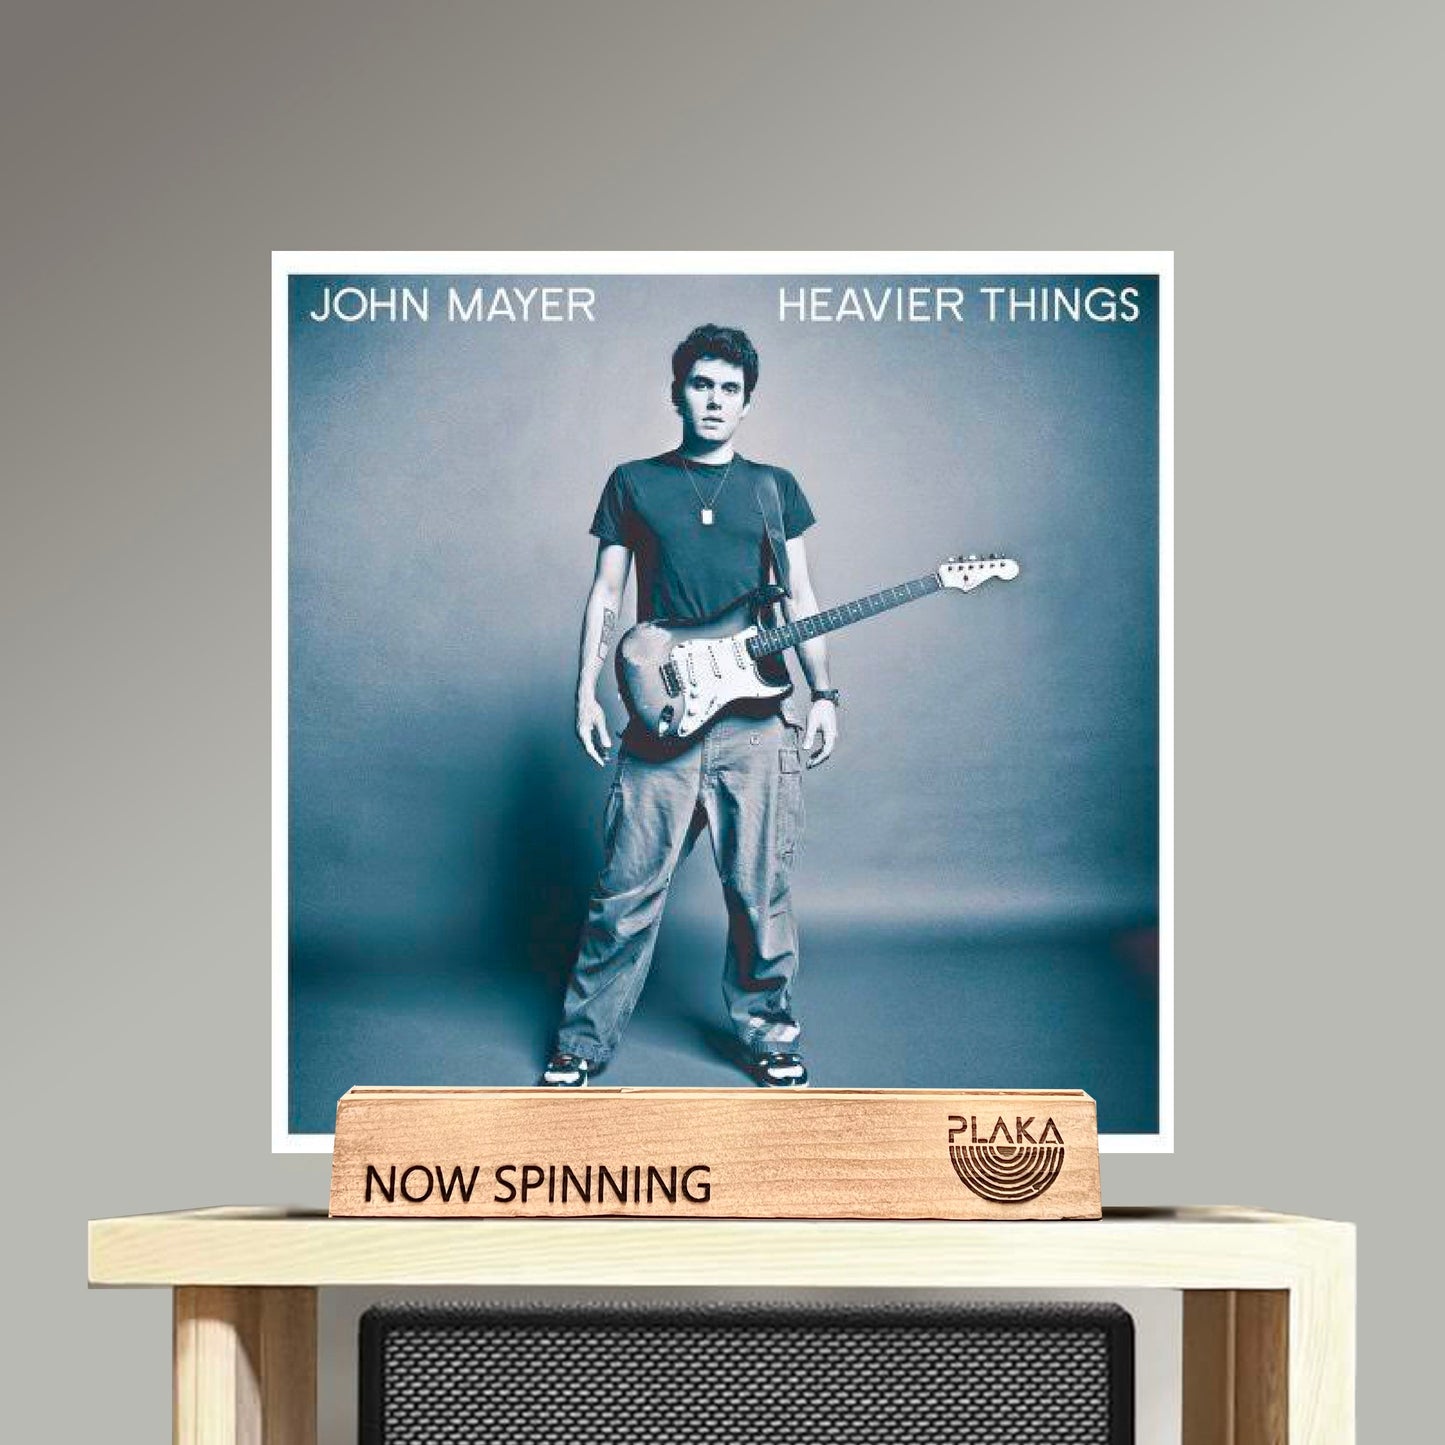 John Mayer - Heavier Things